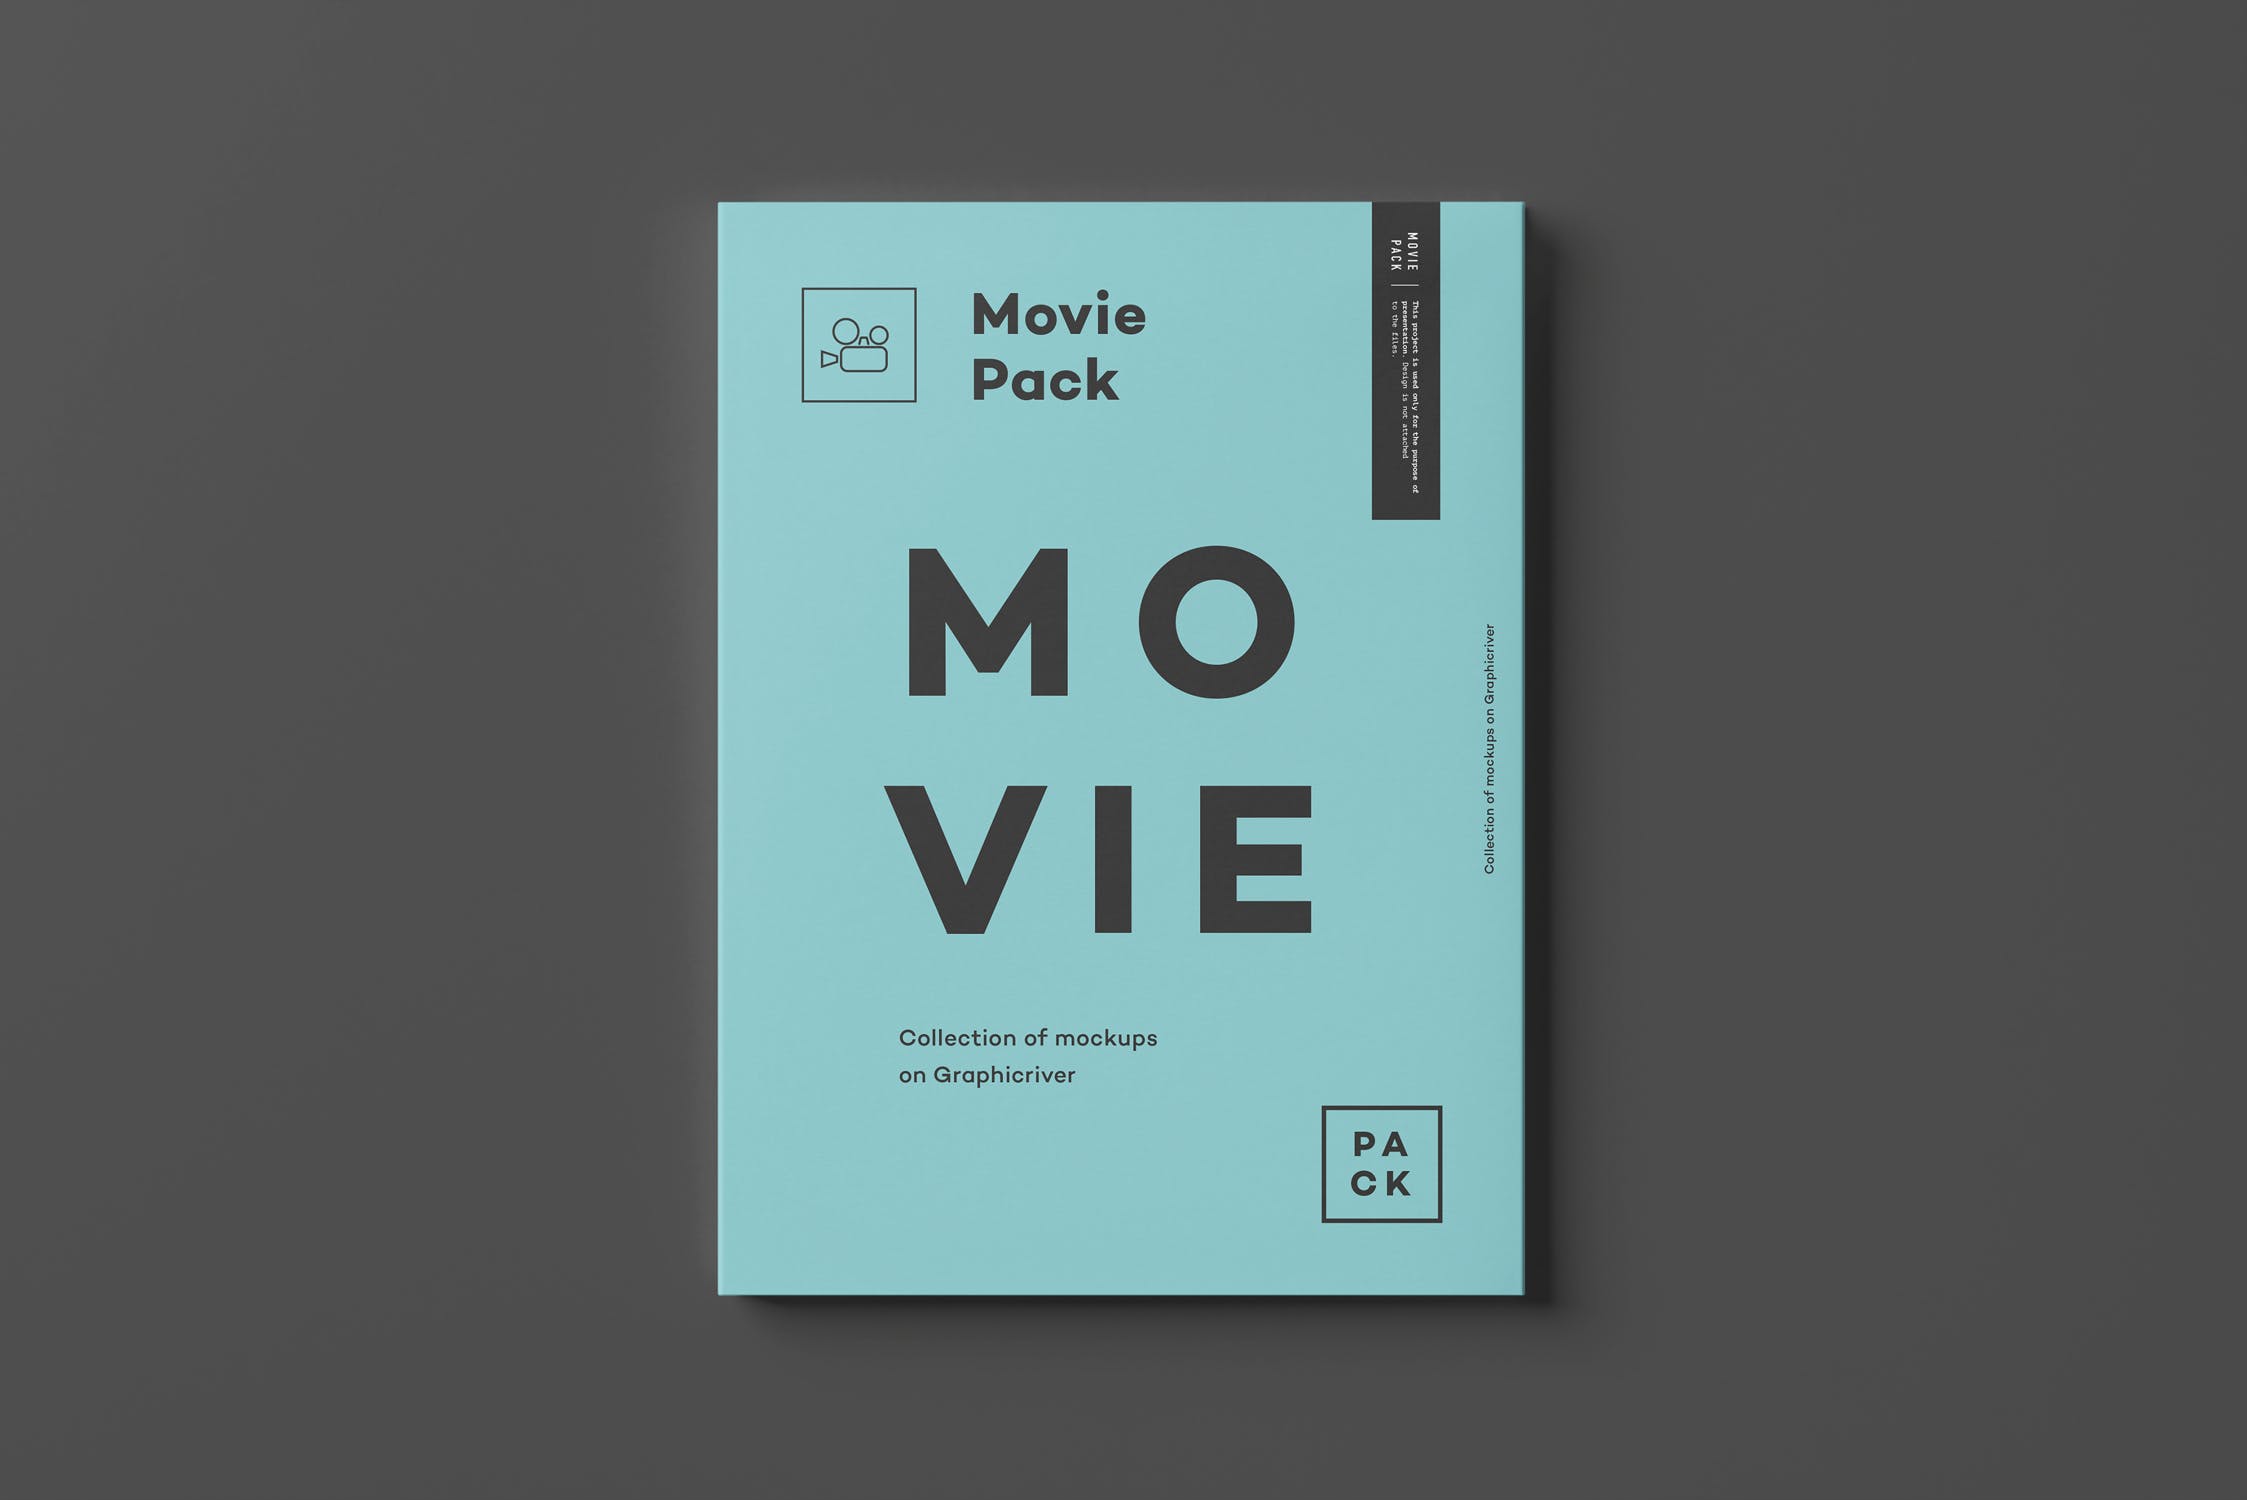 电影DVD包装盒外观设计样机3 Movie Pack Mock-up 3插图(2)